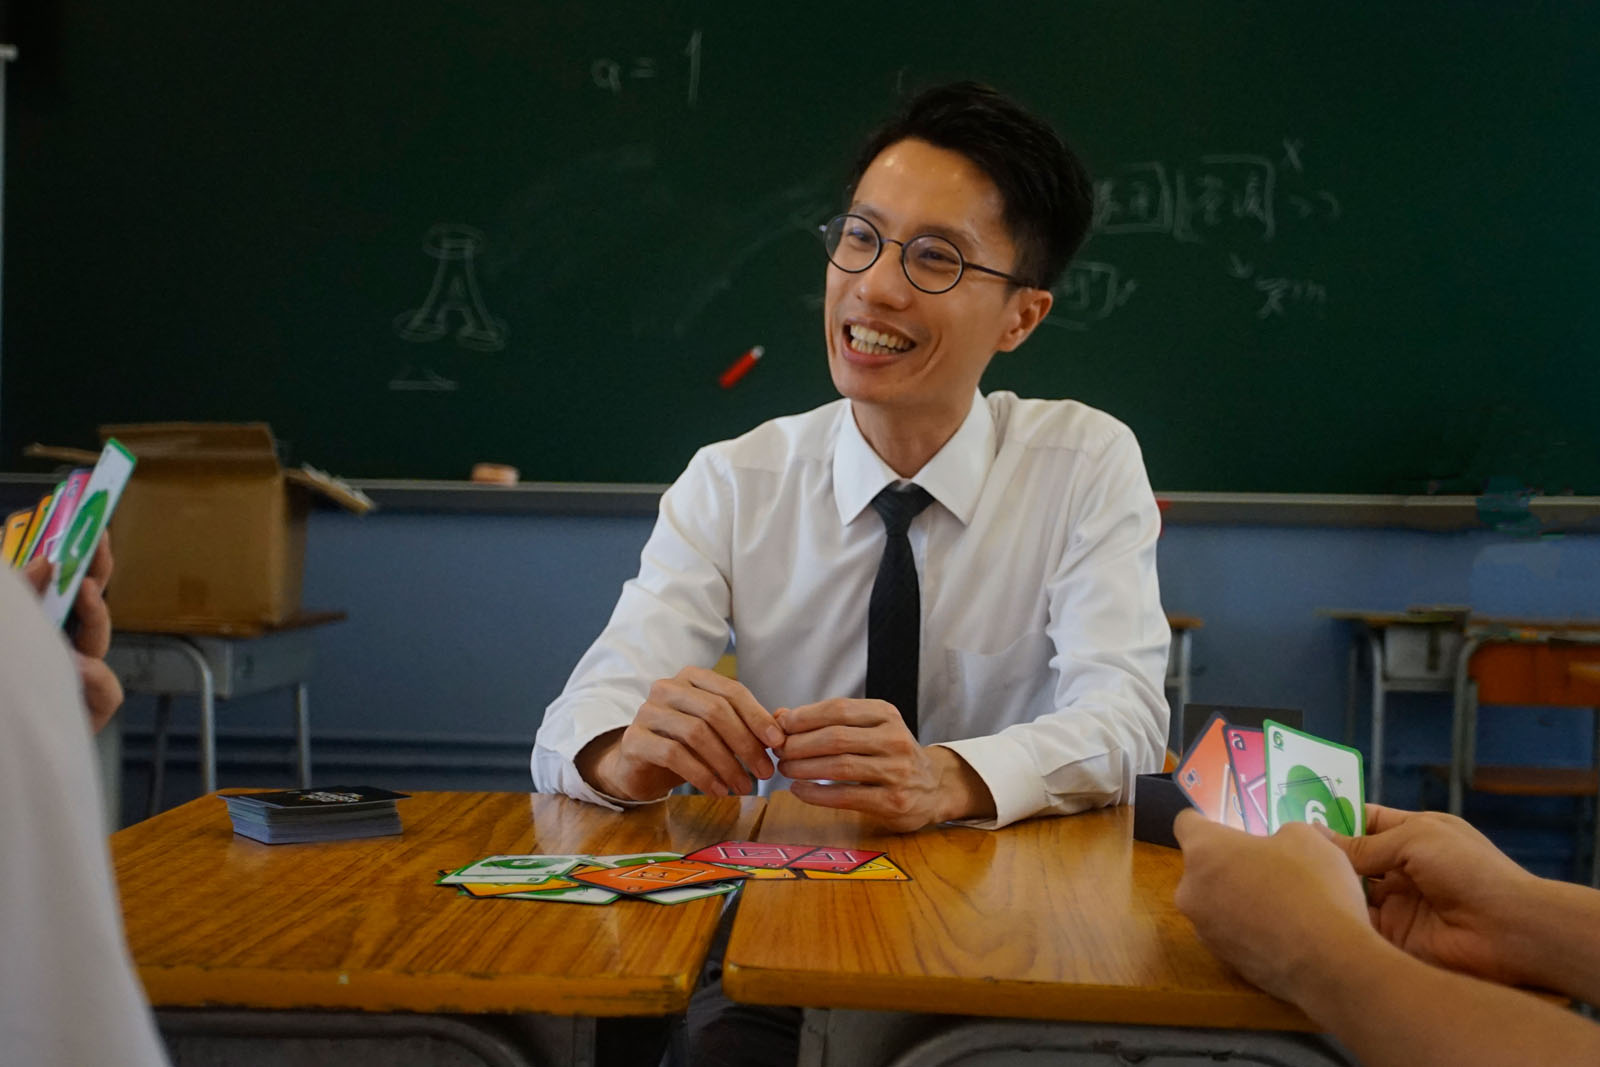 李求恩紀念中學數學科副主任劉頌文認為卡牌能提升學生學習數學的興趣